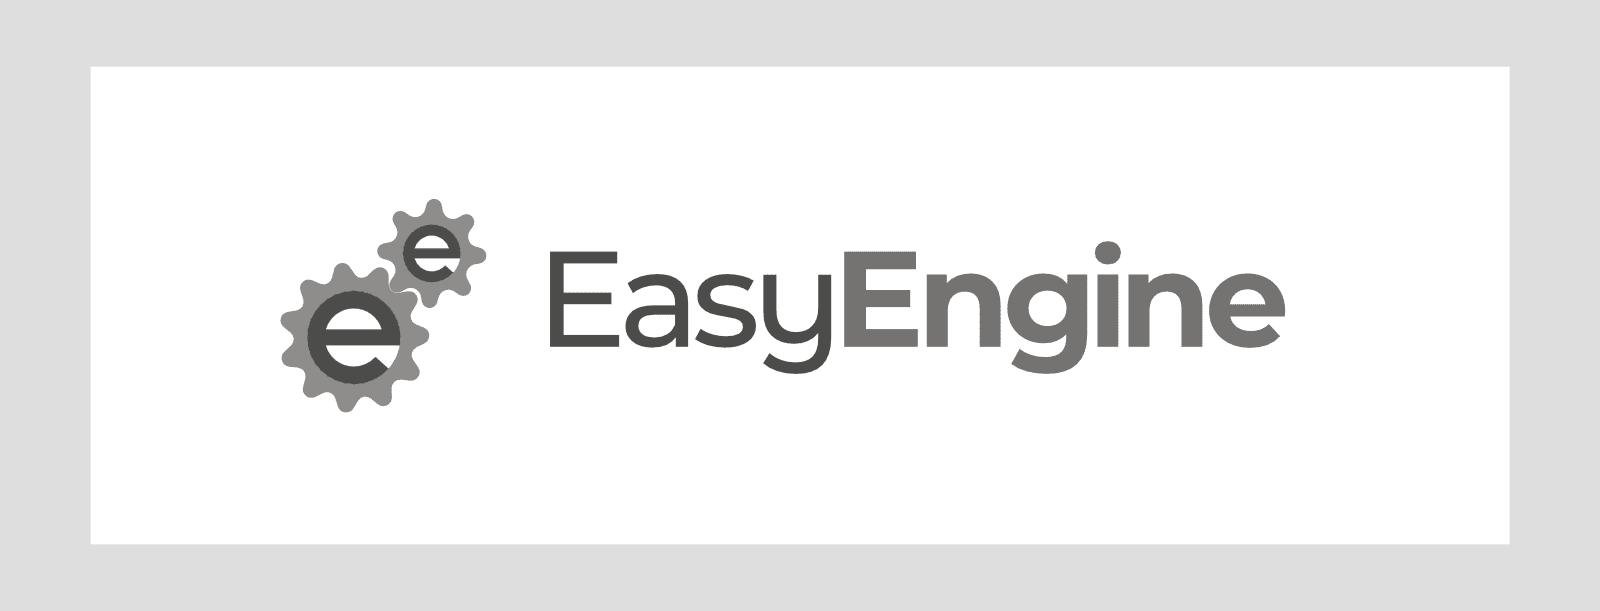 New EasyEngine Logo